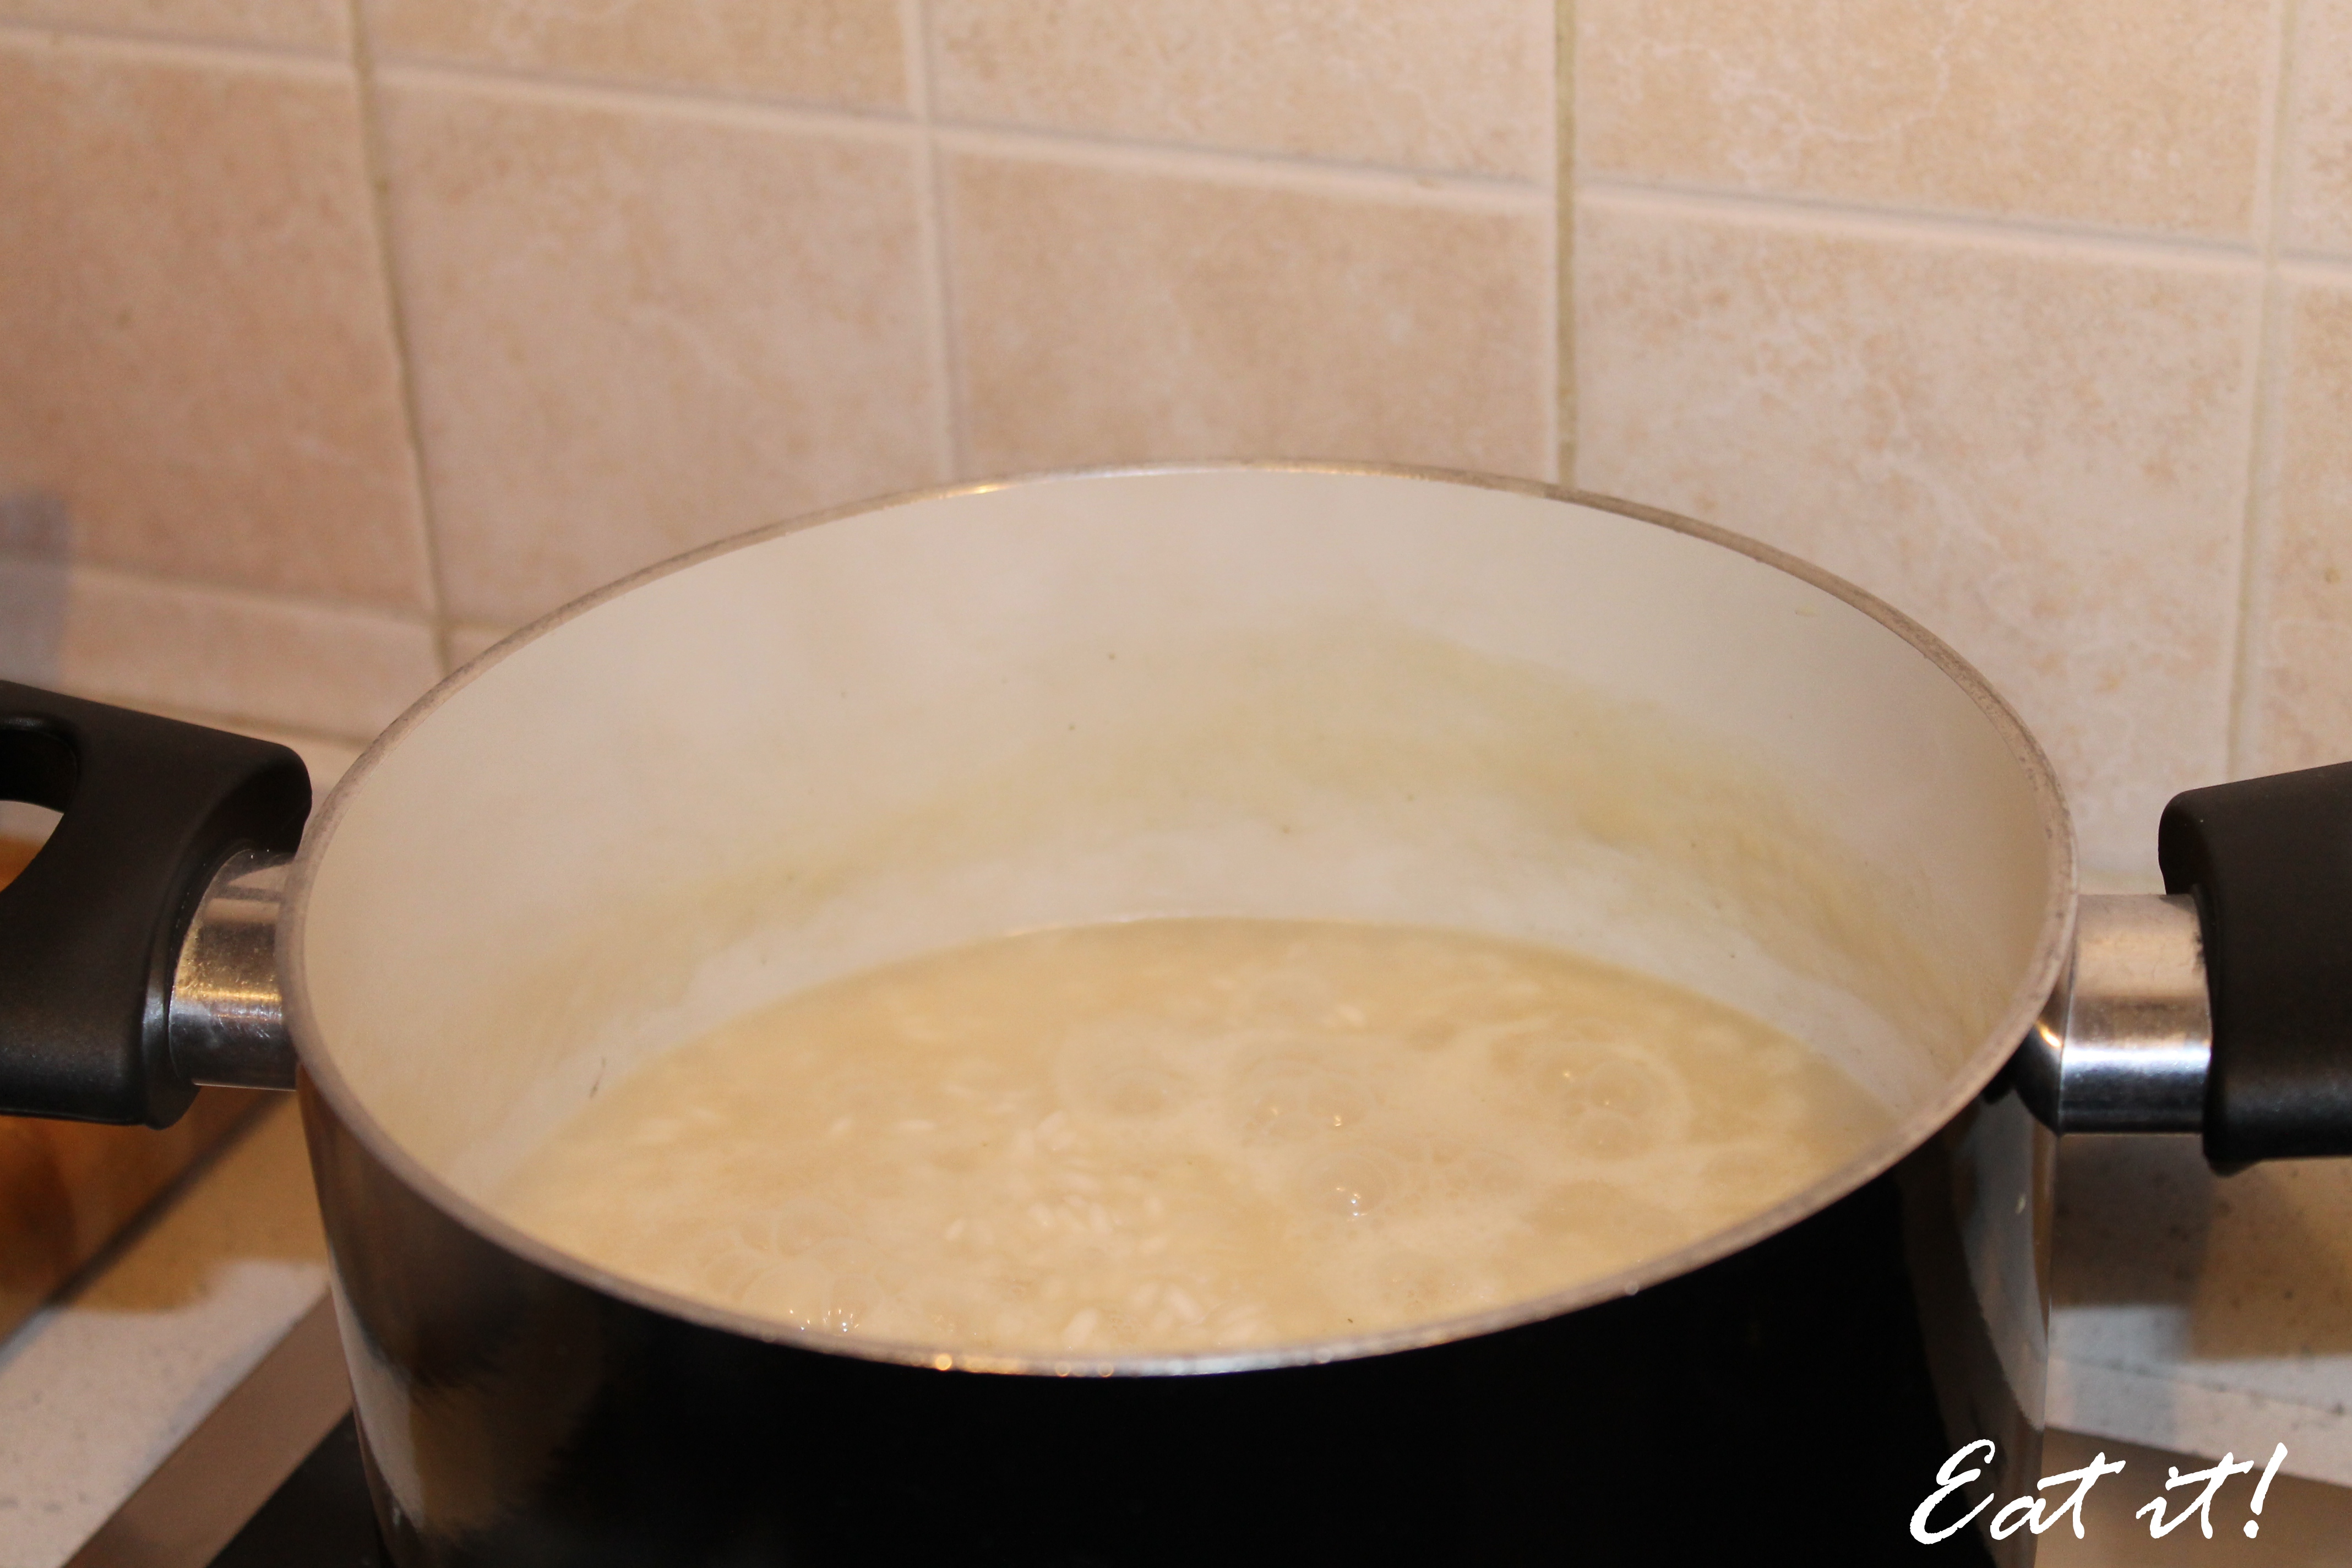 Risotto al tartufo - Cuocere il riso